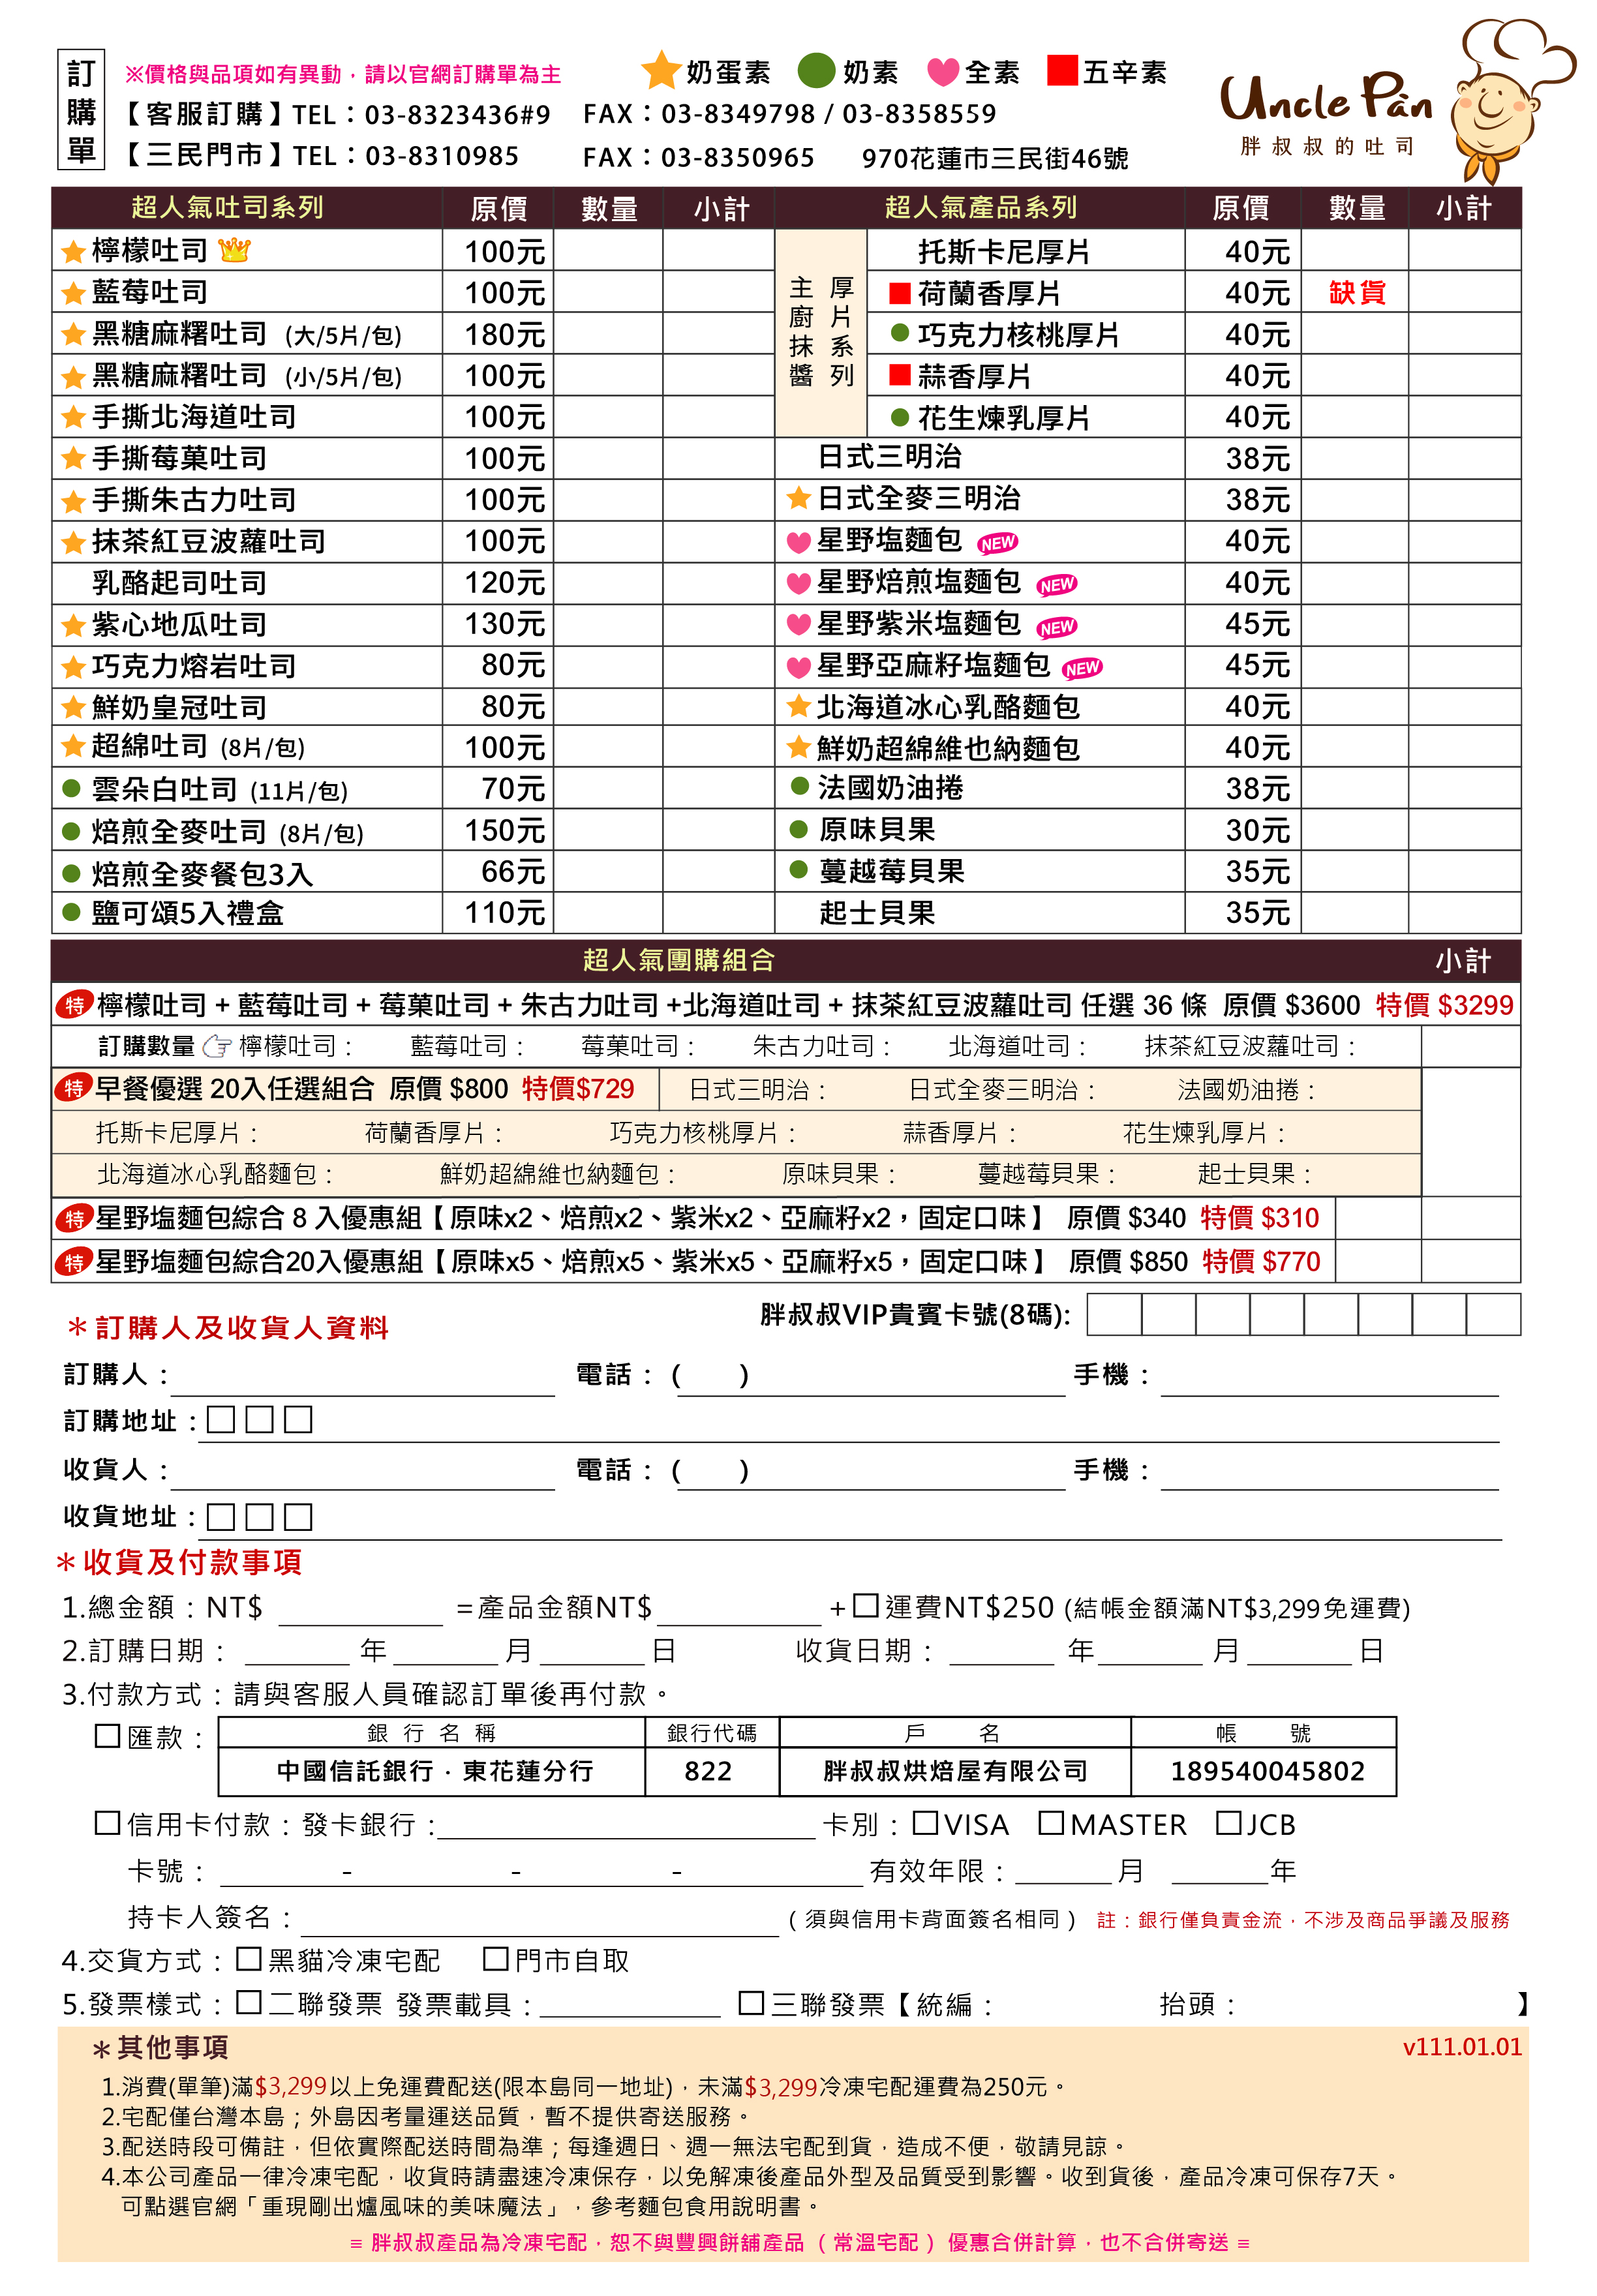 官網-20210106UP訂購單(直) for 客服.png